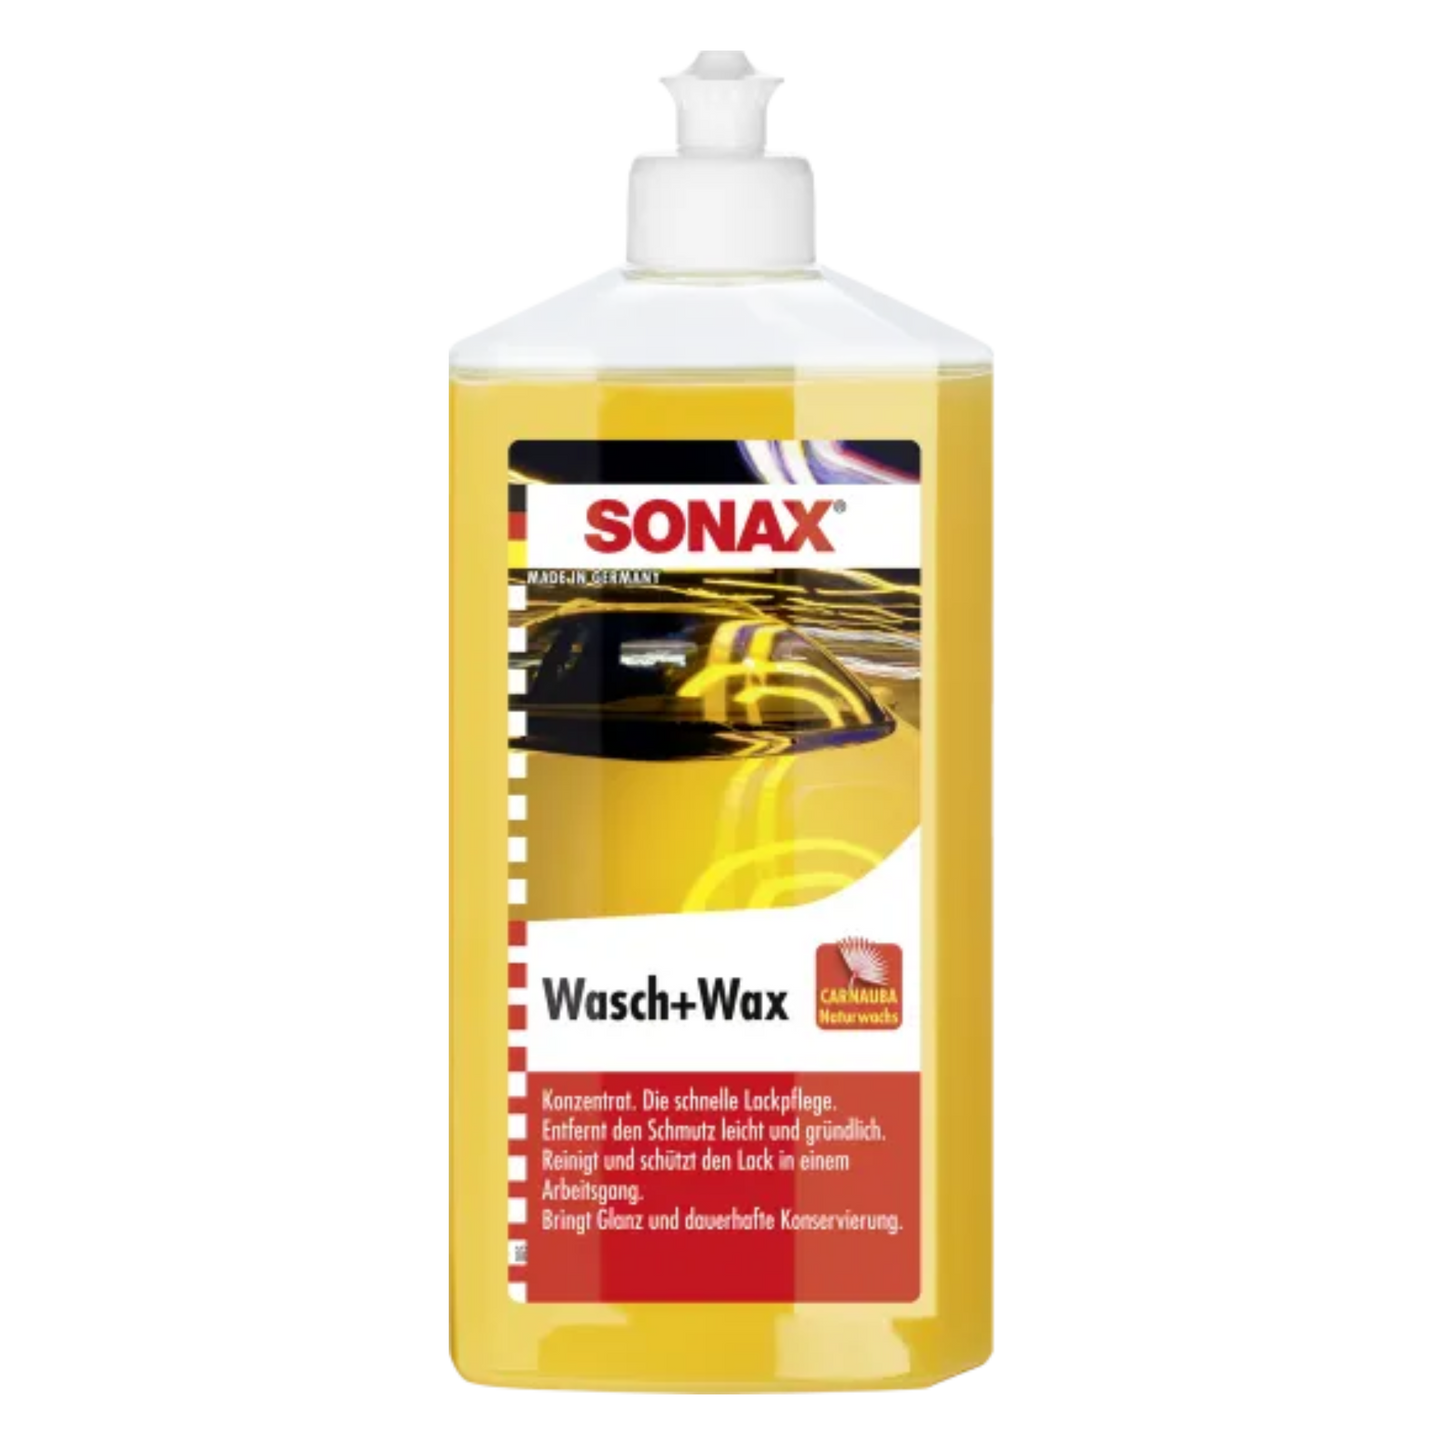 SONAX Wash + Wax